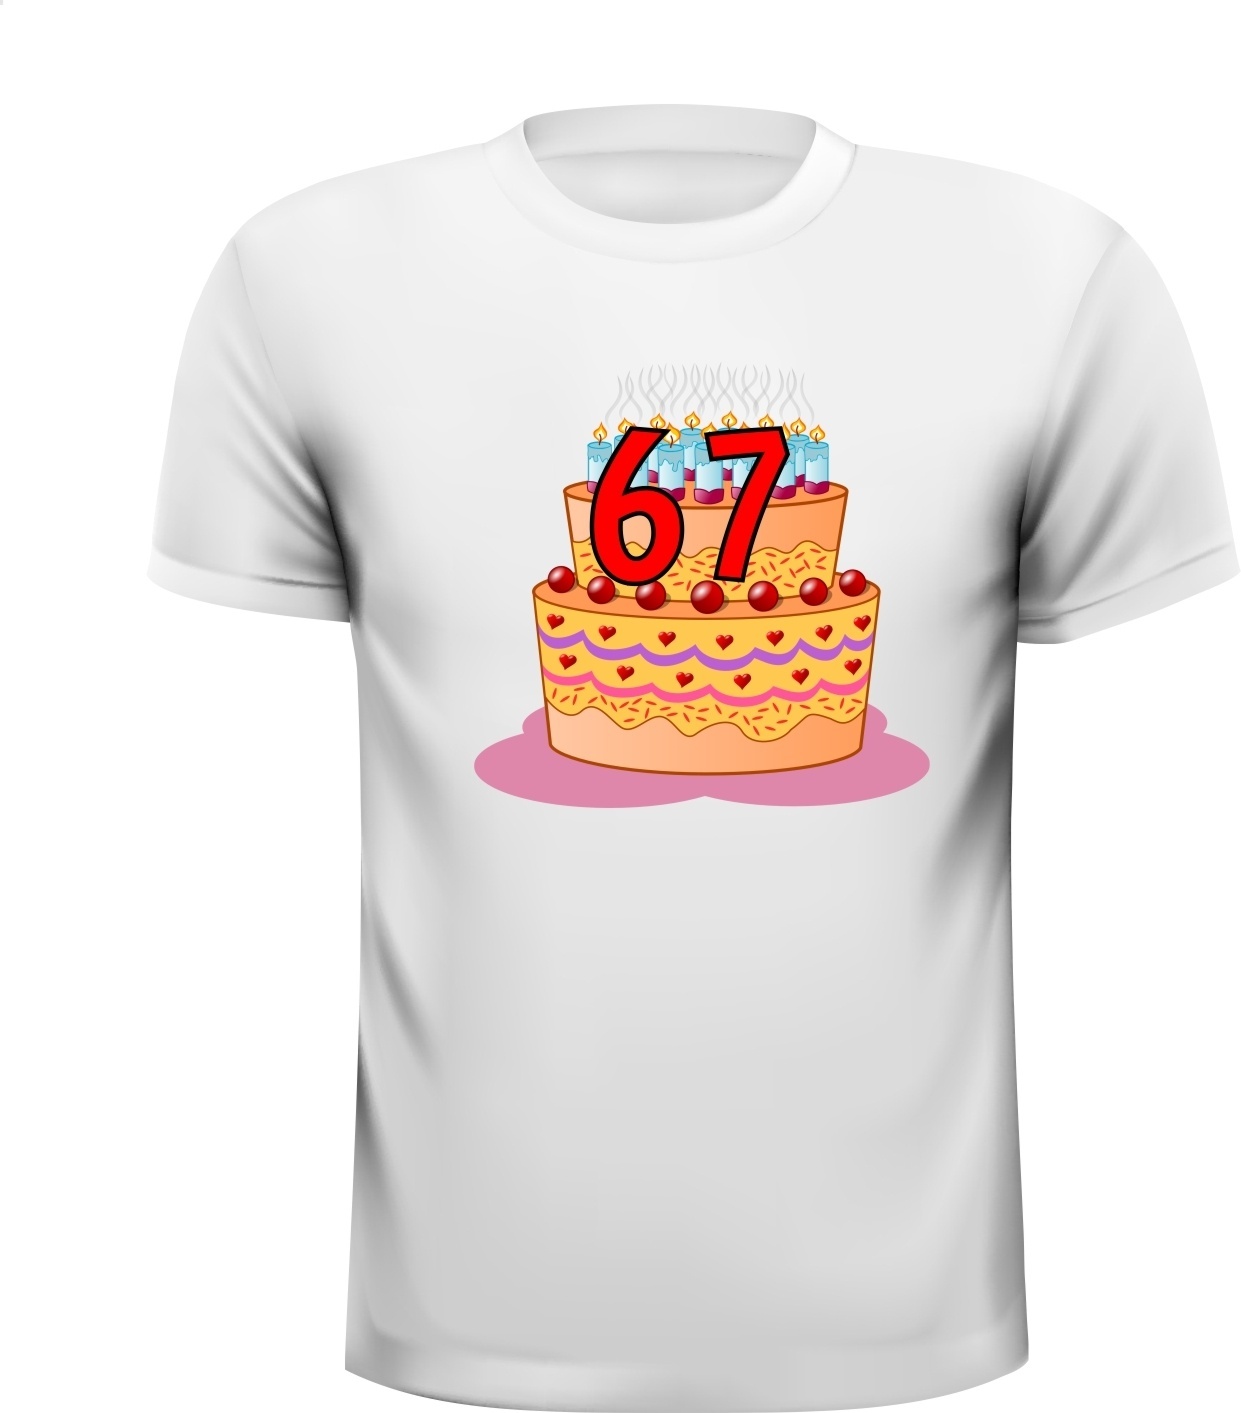 Verjaardag fun shirt 67 jaar met afbeelding verjaardagstaart